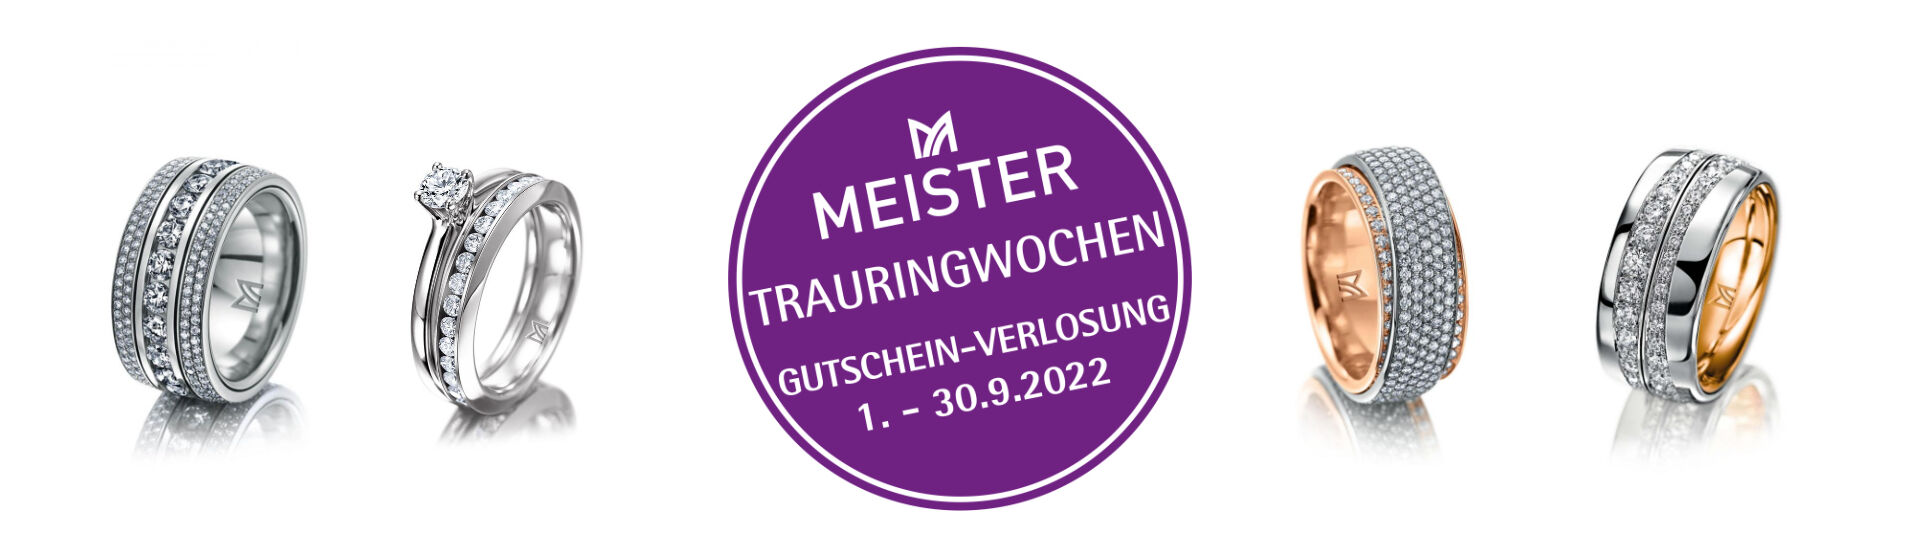 Meister Trauringwochen Banner